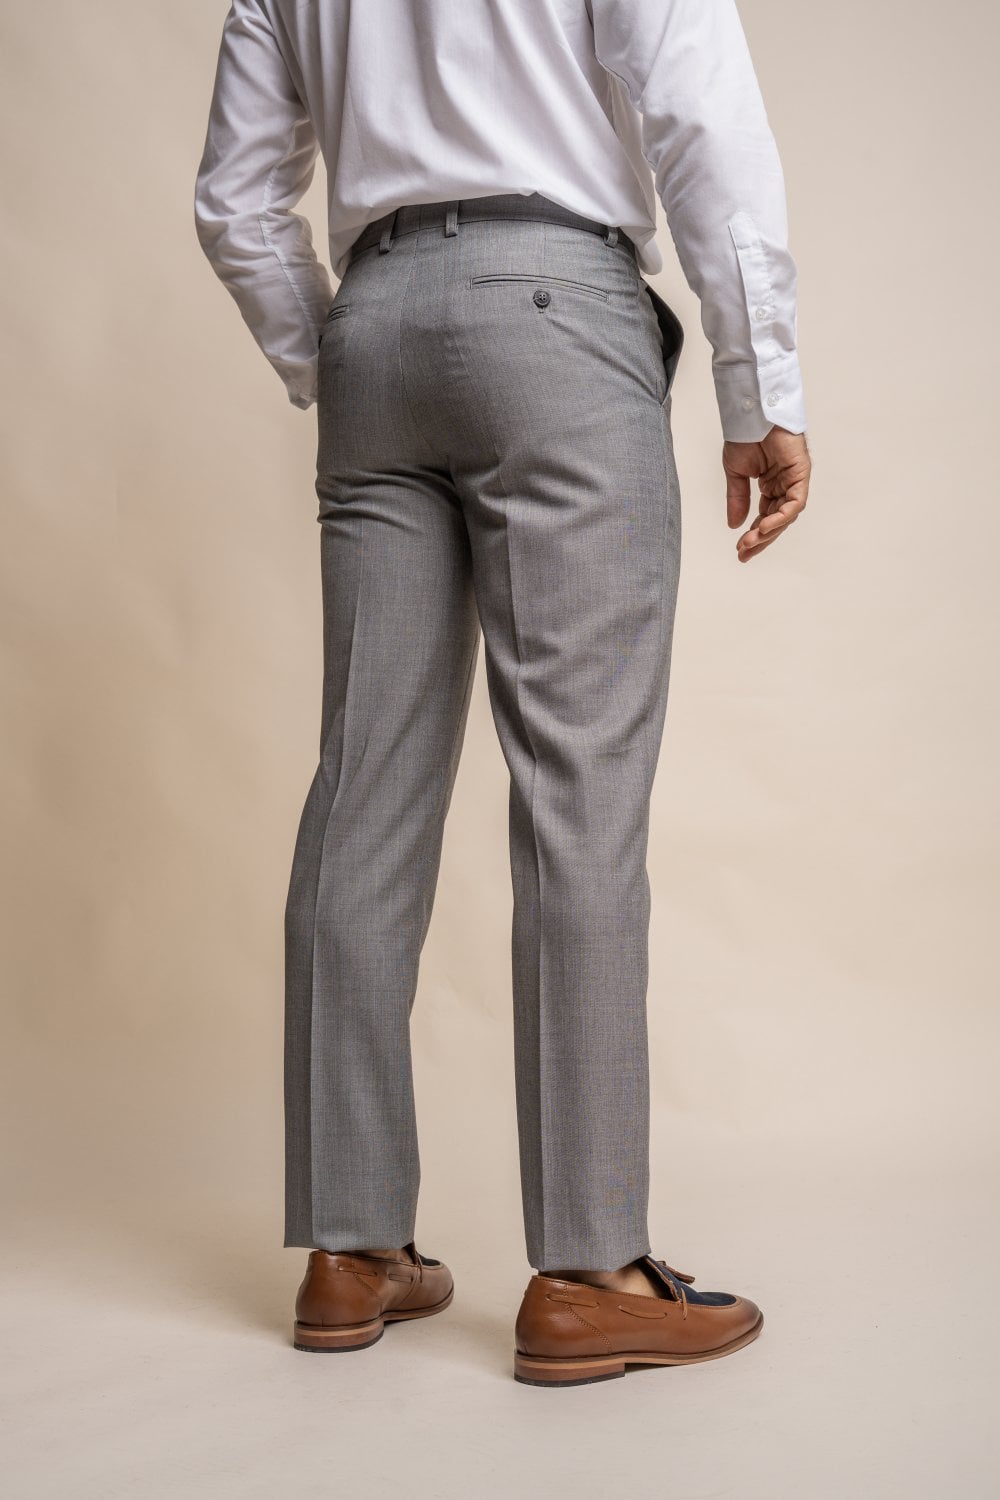 Reegan Grey Trousers